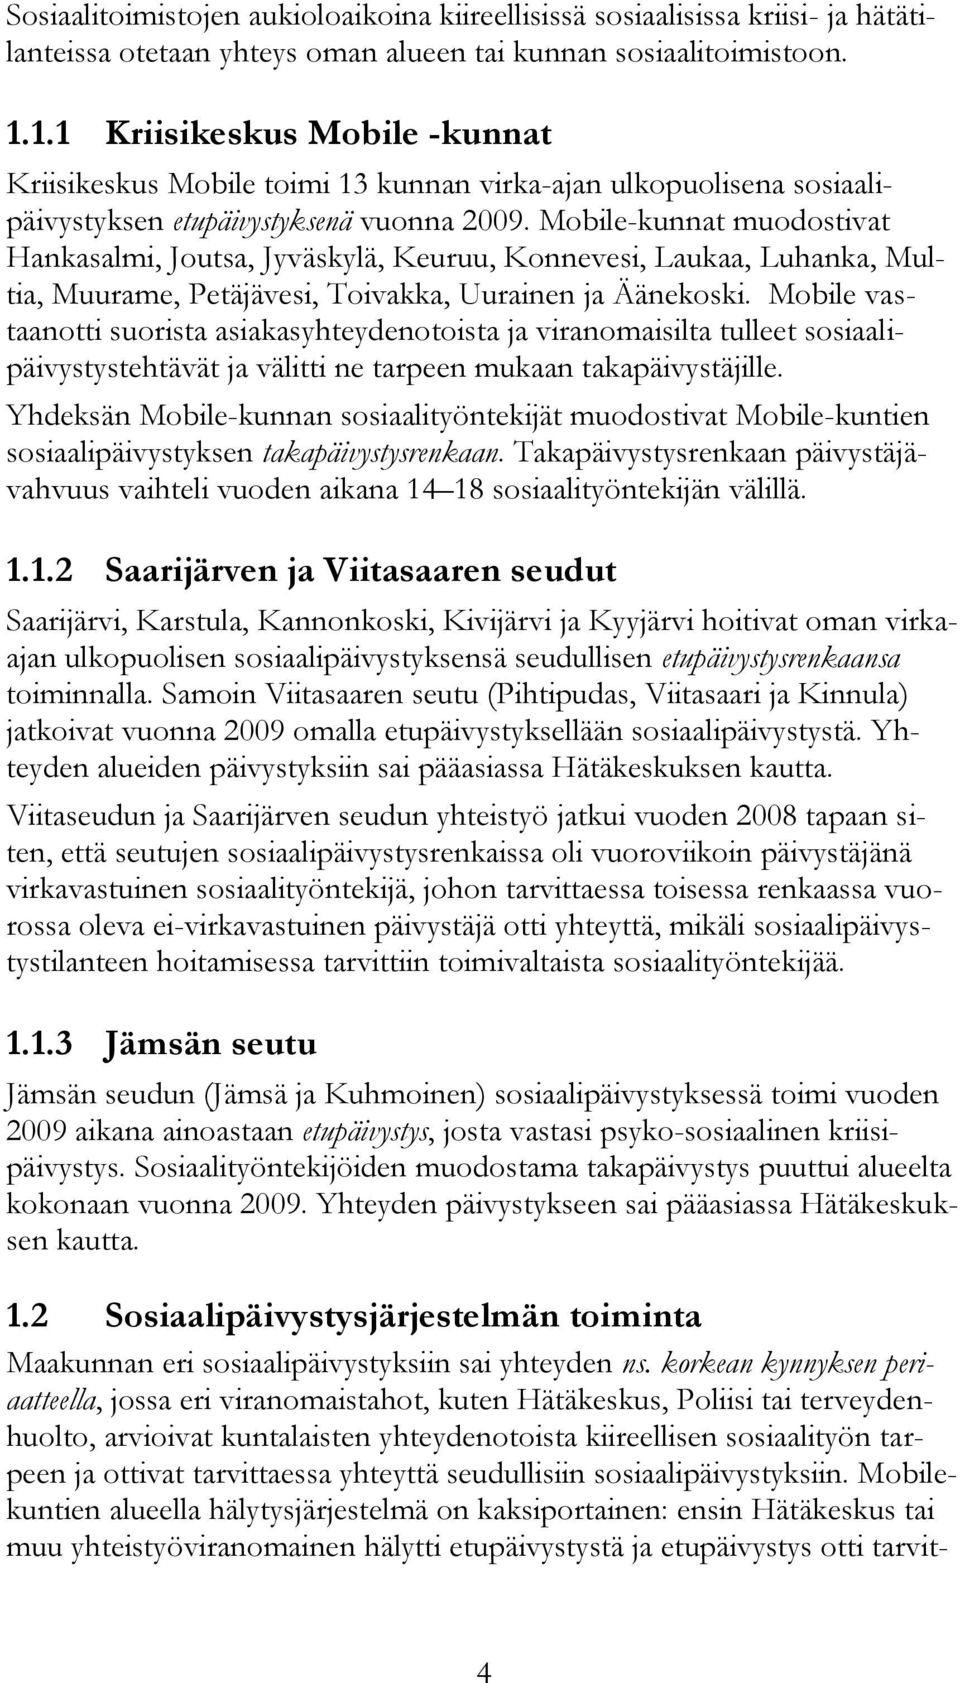 Mobile-kunnat muodostivat Hankasalmi, Joutsa, Jyväskylä, Keuruu, Konnevesi, Laukaa, Luhanka, Multia, Muurame, Petäjävesi, Toivakka, Uurainen ja Äänekoski.